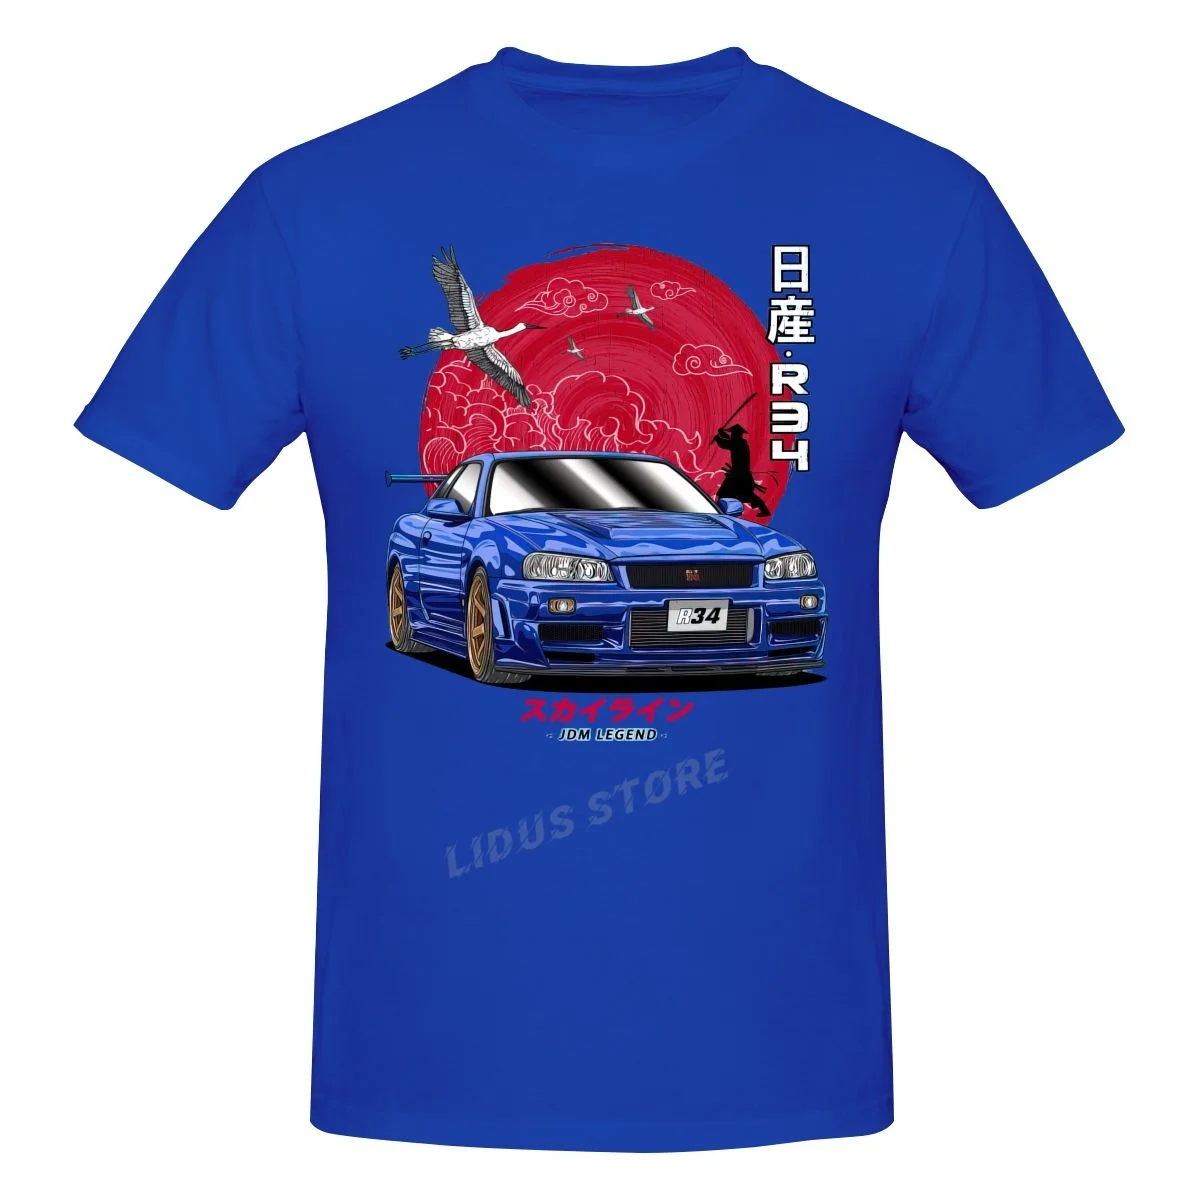 

JDM Nippon Nissan Skyline GT-R R34 T shirt Harajuku Clothing Short Sleeve Cotton Streetwear Graphic Tshirt Tees